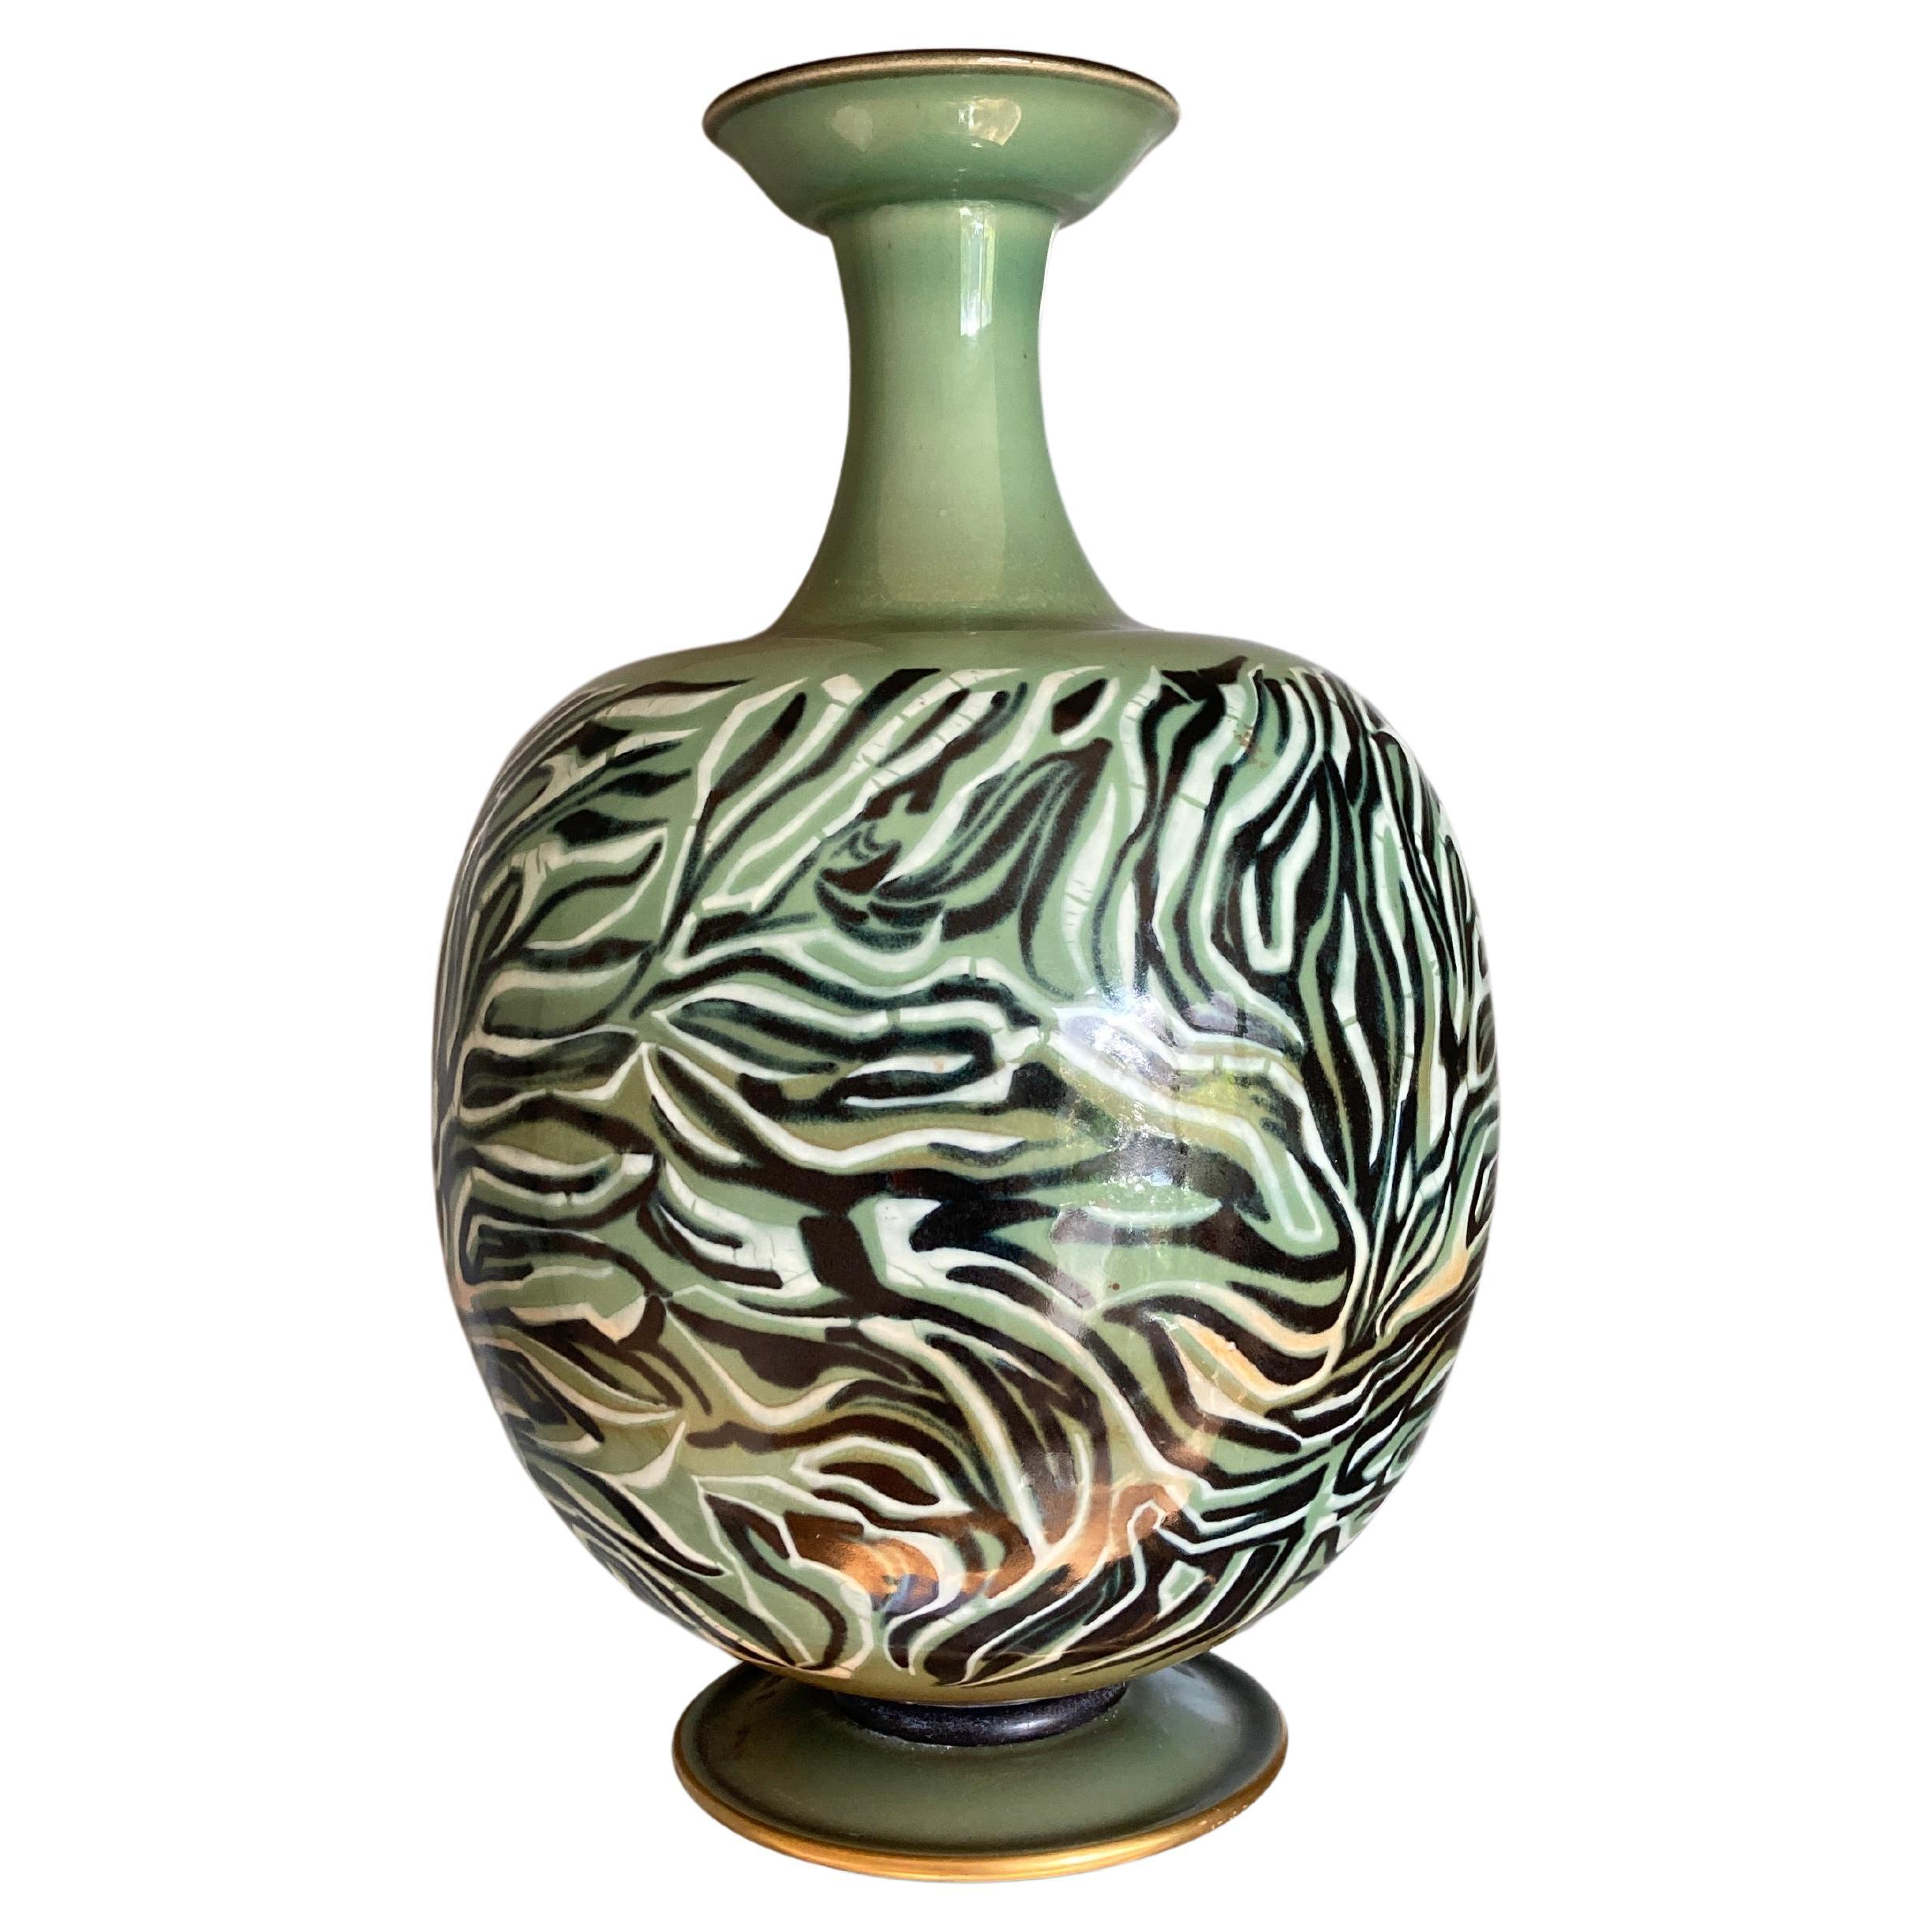 Porcelain vase by Manufacture Nationale de Sèvres